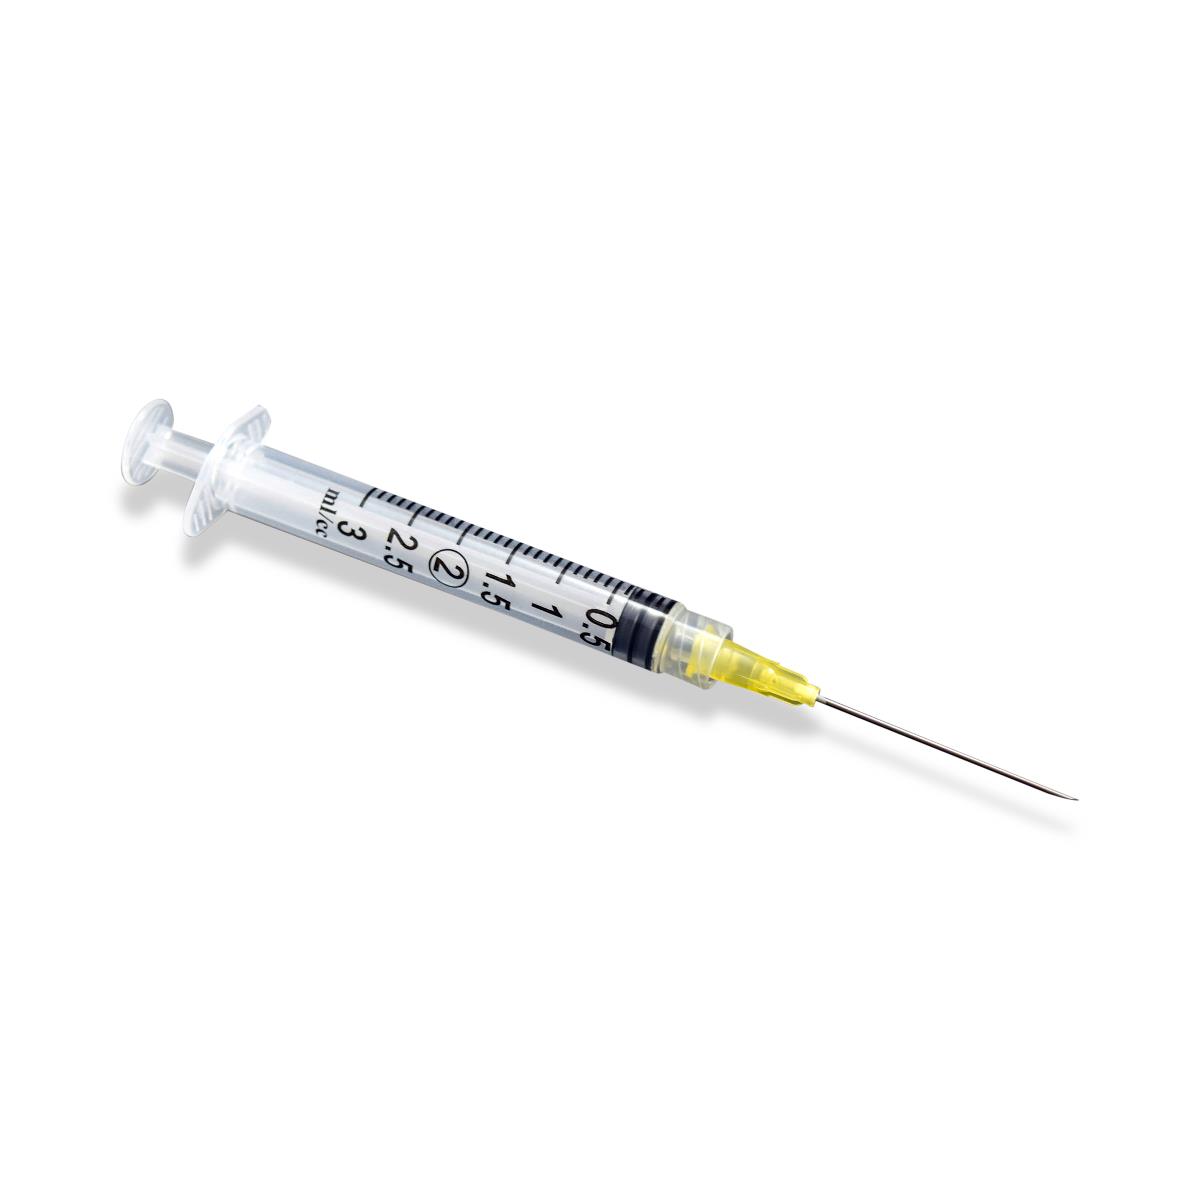 Exel Luer Lock Syringe with Needle